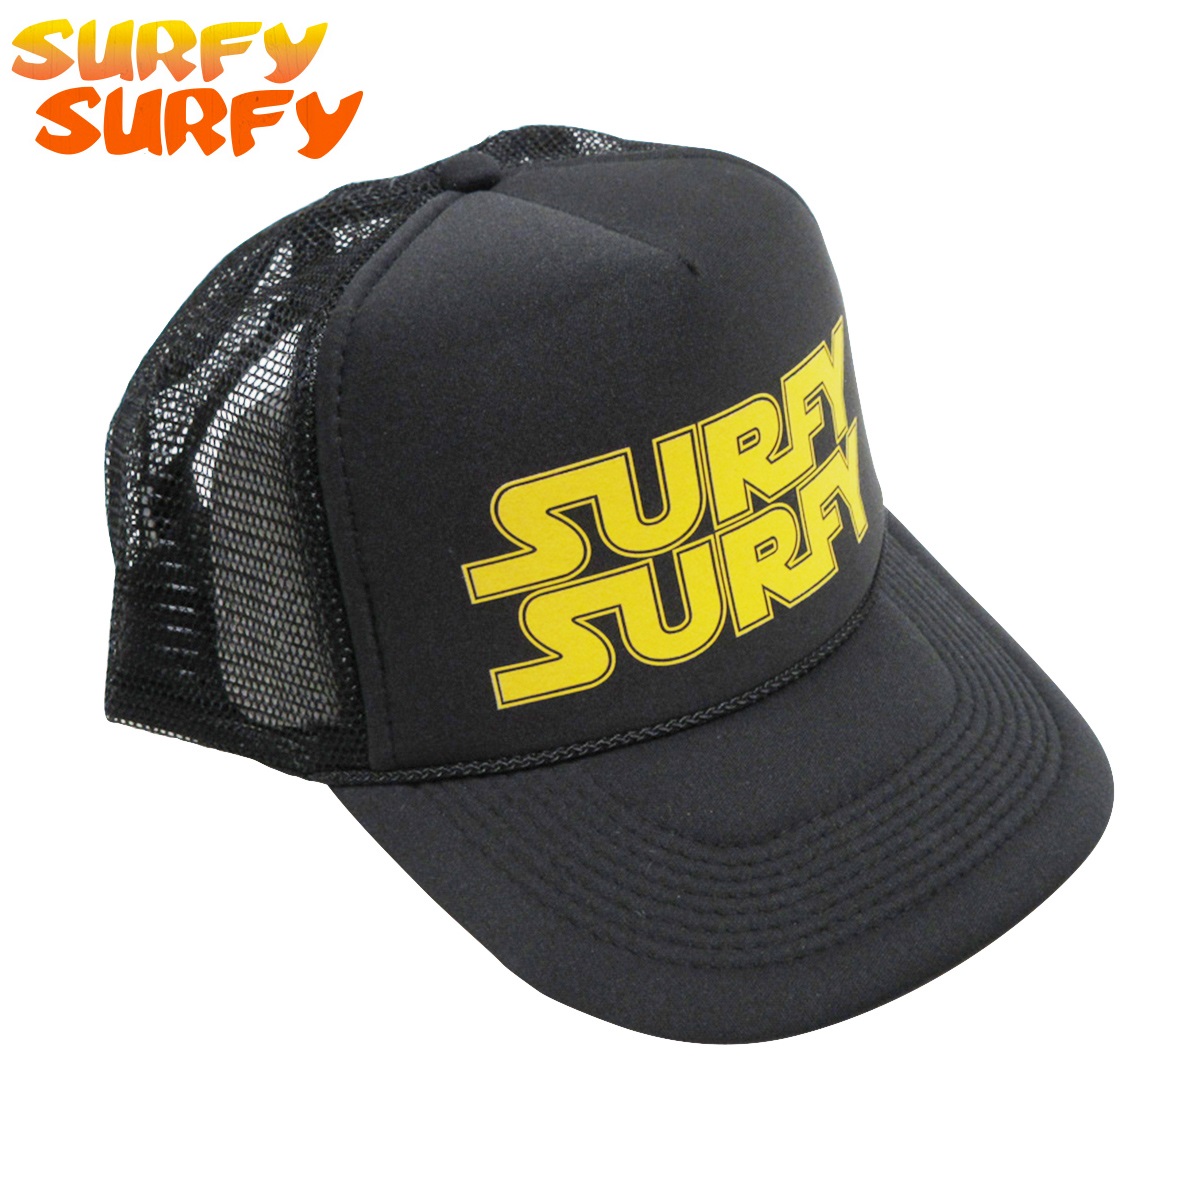 SURFY SURFY：SURFY WARS CAP